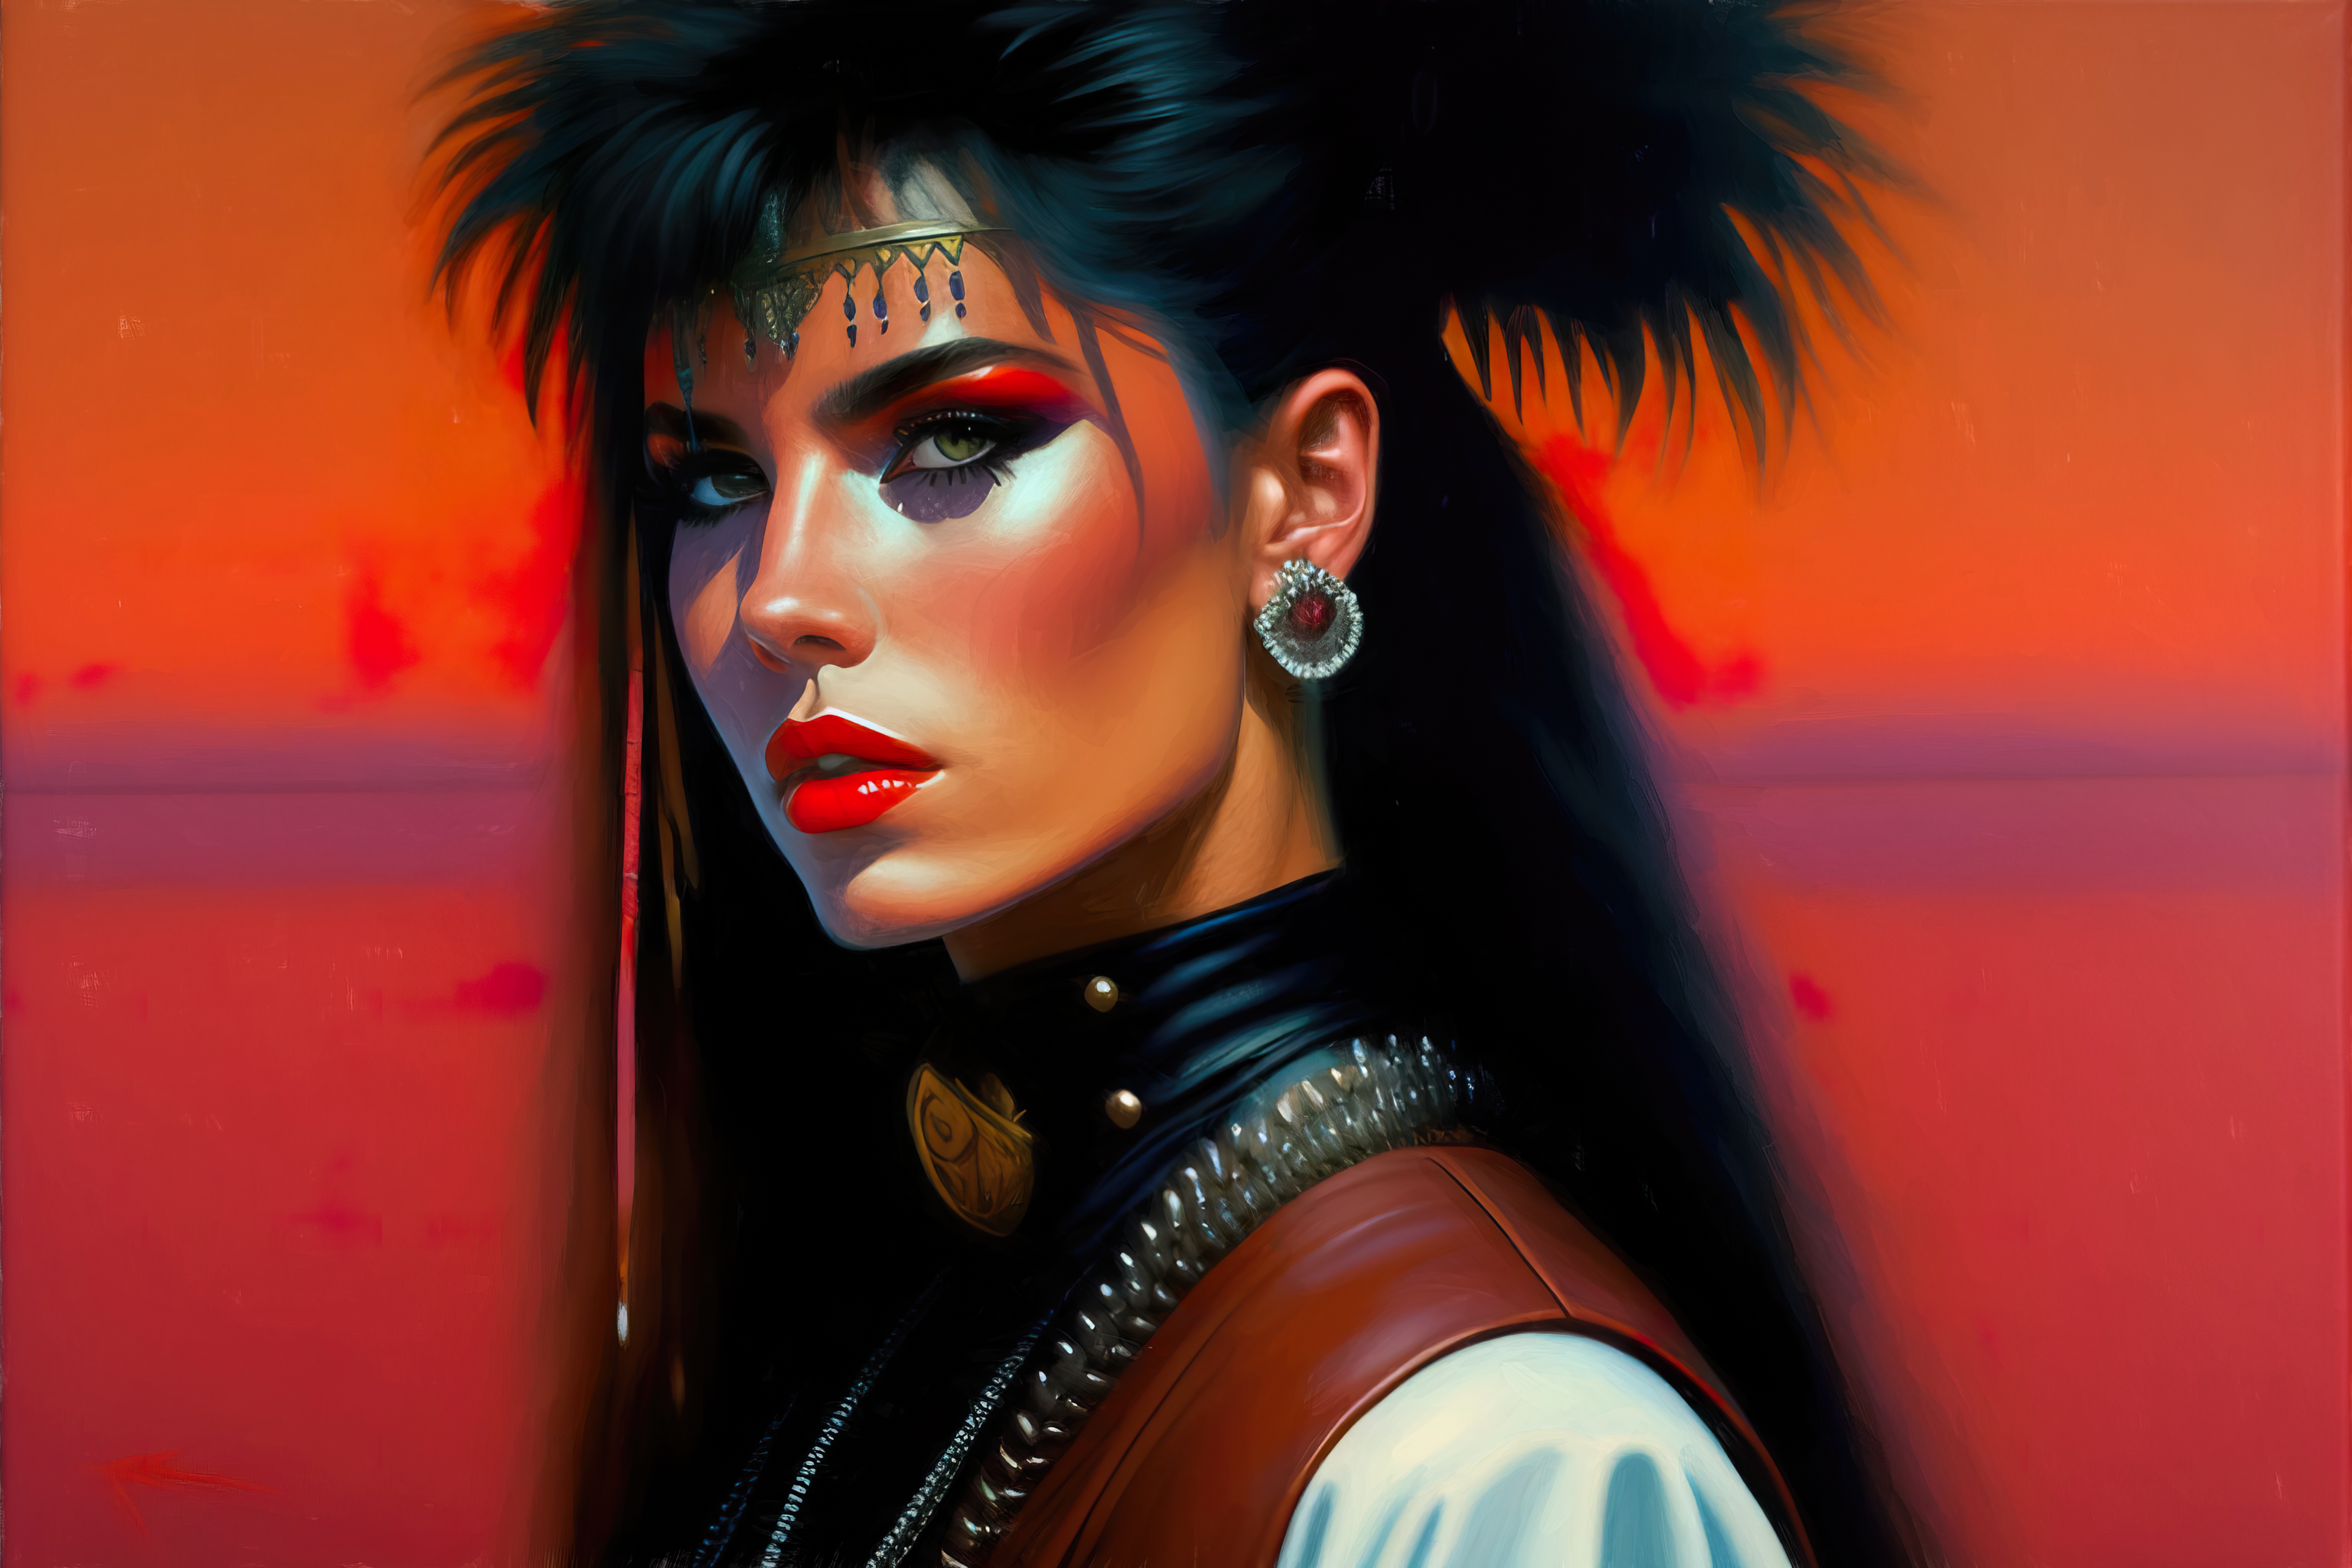 Lexica Ai Art Portrait Women Oil Painting 1980s Punk Girl Vibrant Detailed Face 3840x2560